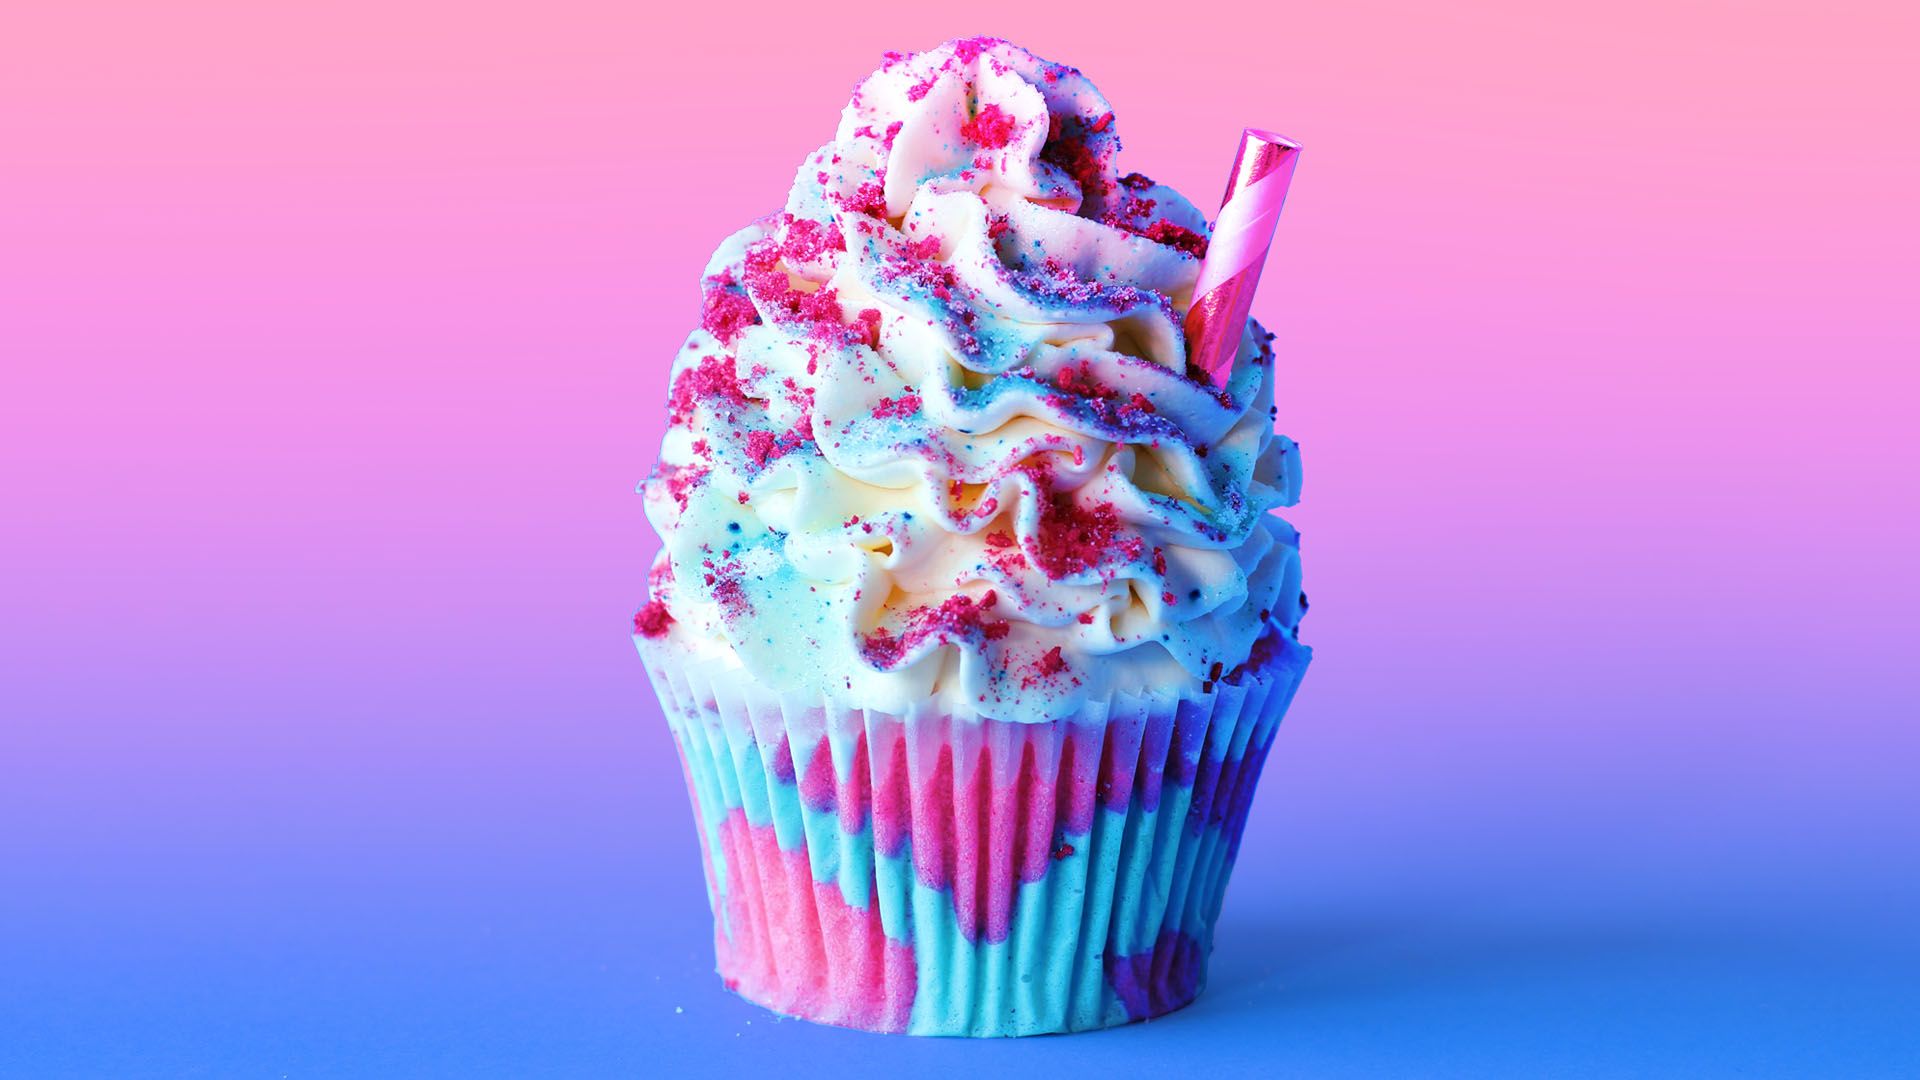 Unicorn Frappuccino Cupcakes Recipe